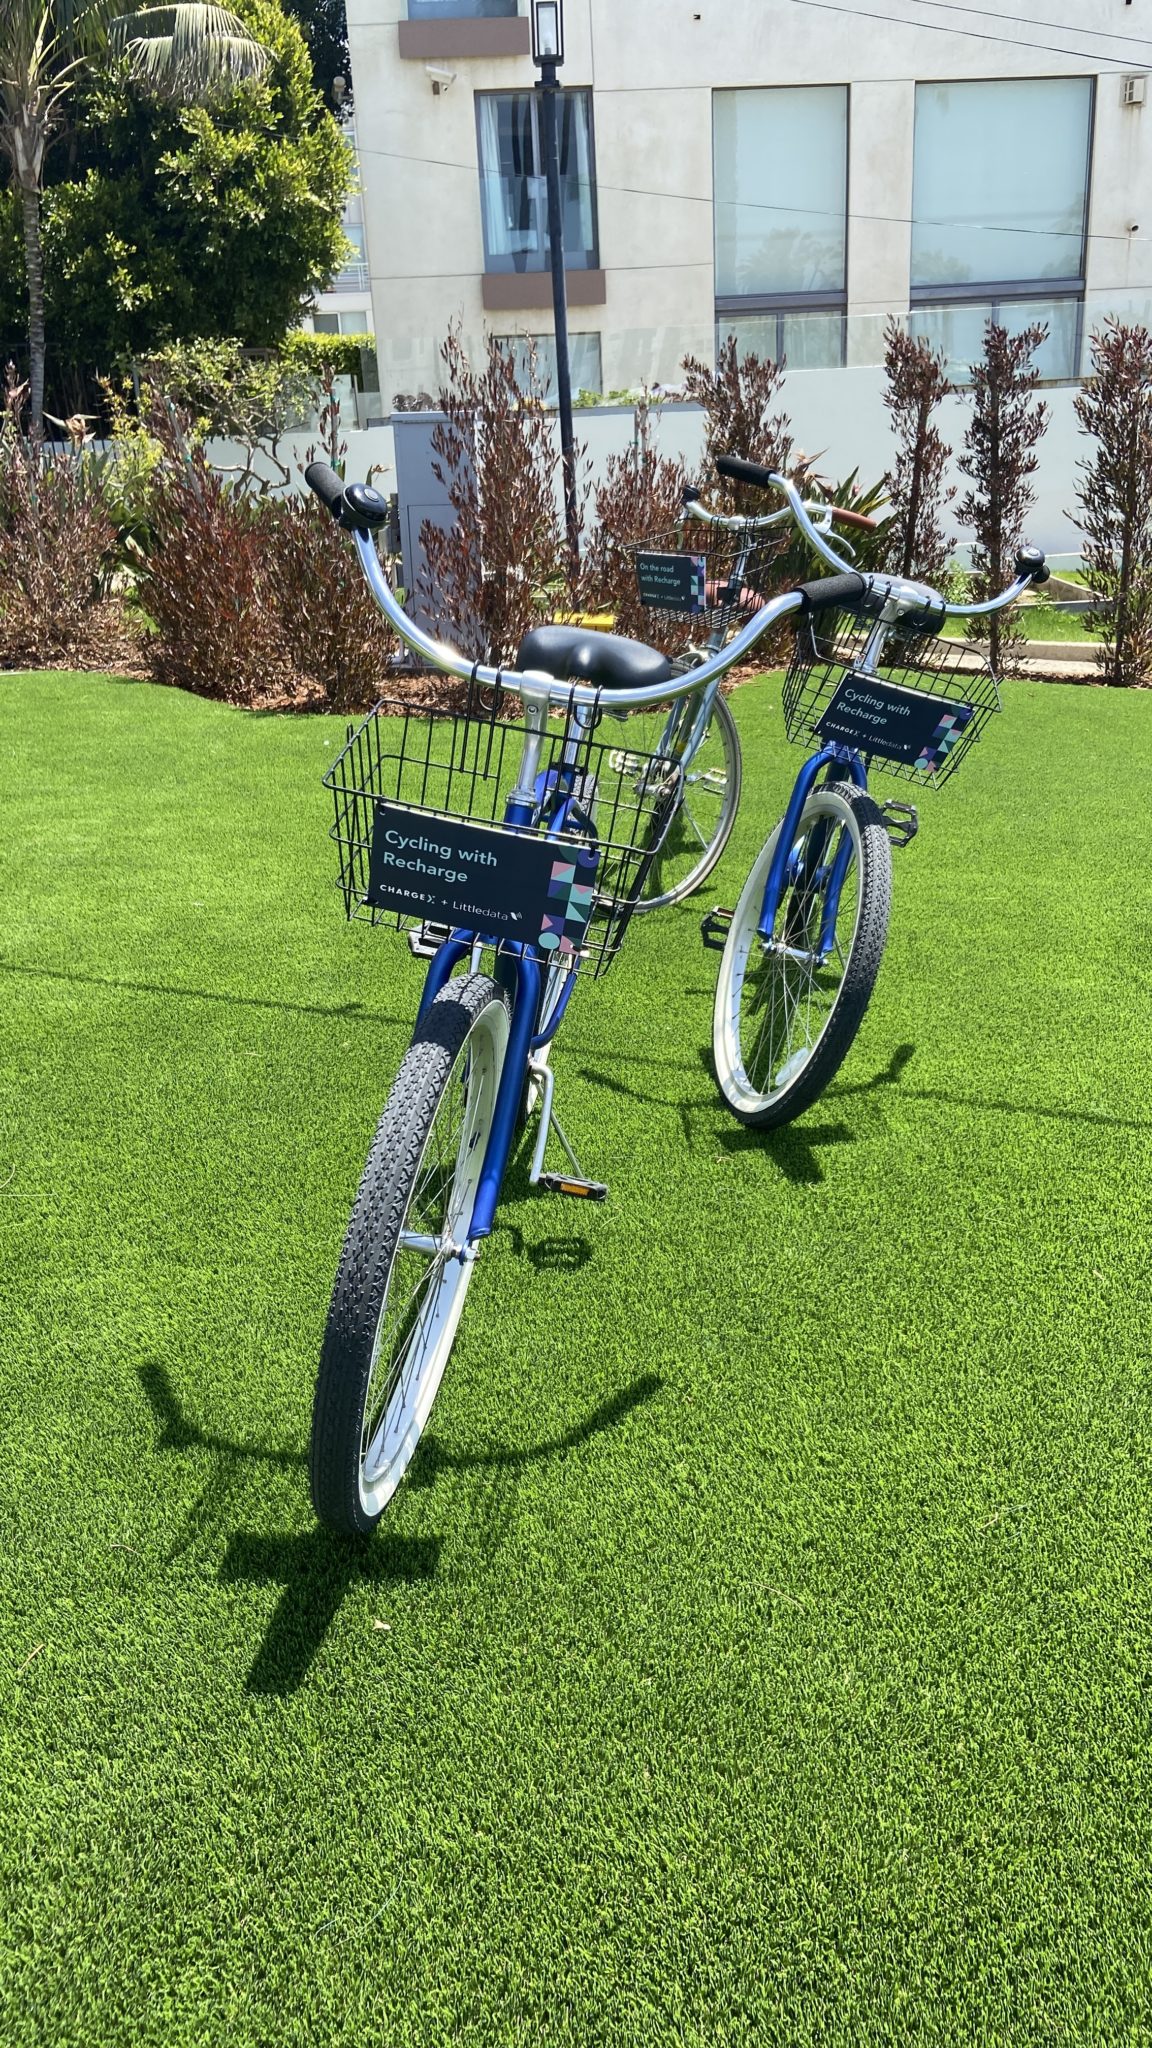 دراجتان أزرقتان تحملان العلامة التجارية ChargeX على سلالهما الأمامية تقفان مع مساندها على بعض العشب جاهزة للحضور لركوبها.